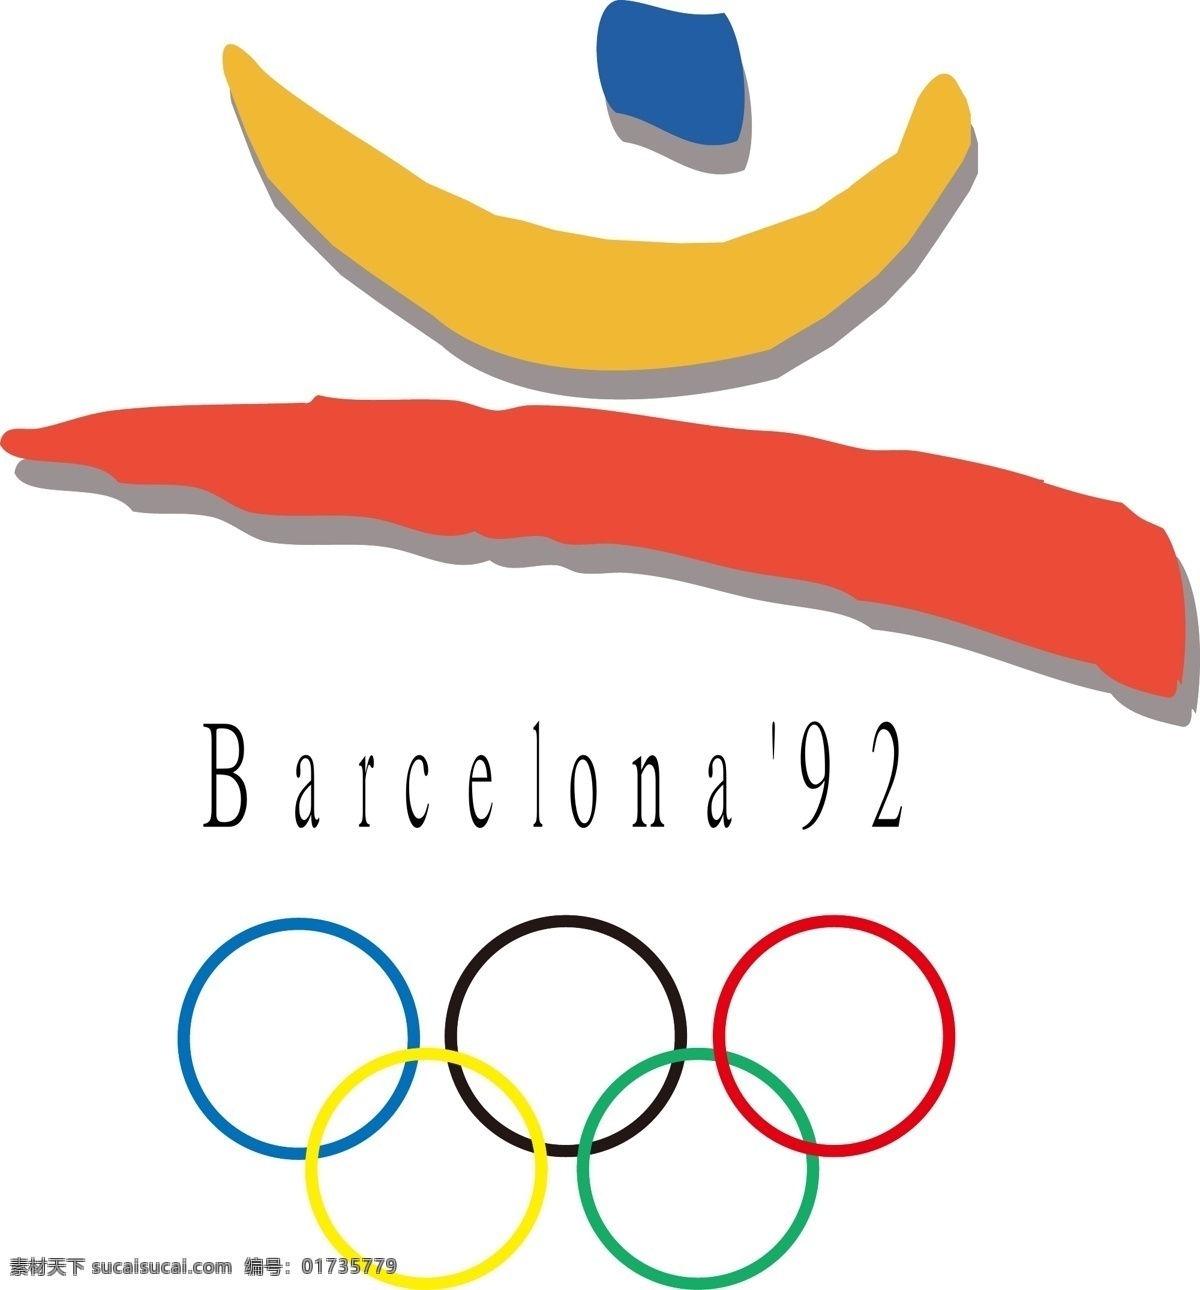 1992 年 西班牙 巴塞罗那奥运会 logo 冬奥会 矢量图 图标 其他矢量图